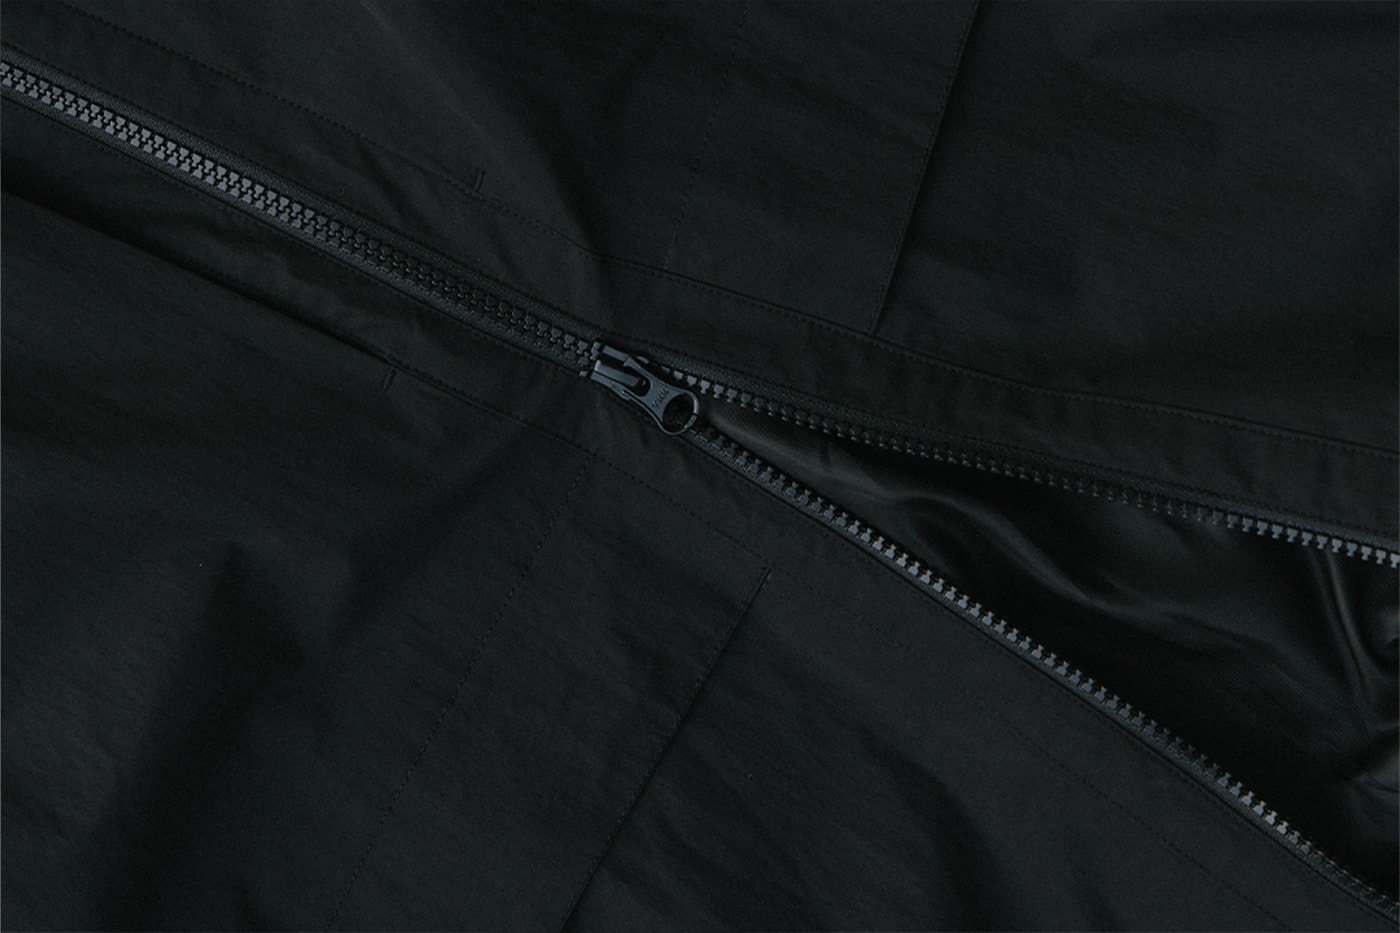 ハイプビーストの手掛けるオリジナルアパレルライン ハイプビースト グッズ アンド サービスから新作カプセルコレクションが到着 Hypebeast Goods and Services Drop 2 Minimalist Capsule Collection Track Pants Jacket Tech Shirt Black